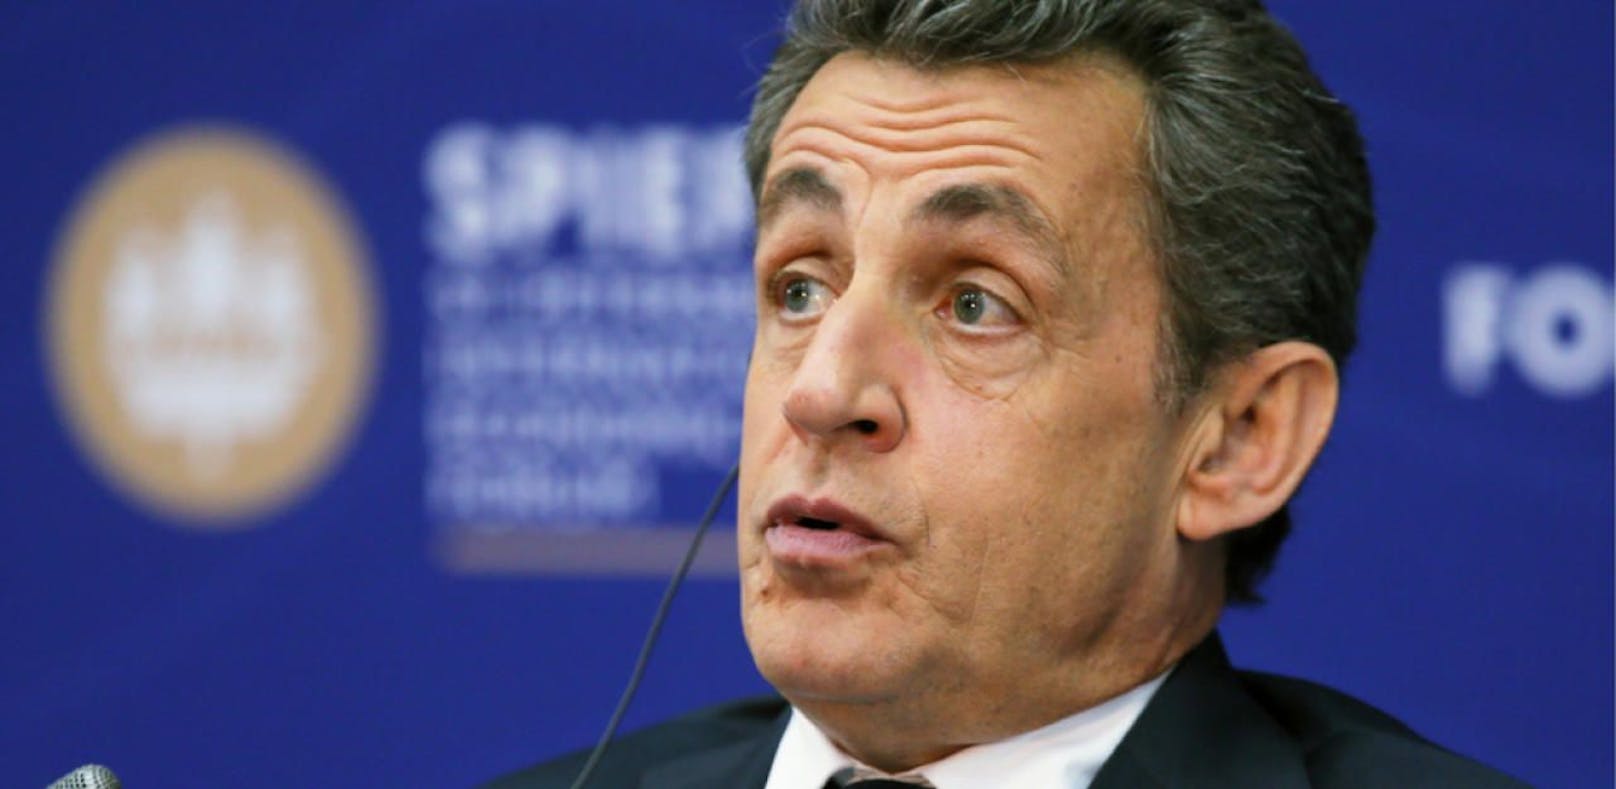 Nicloas Sarkozy befindet sich im Visier der Justiz. (Archivbild)